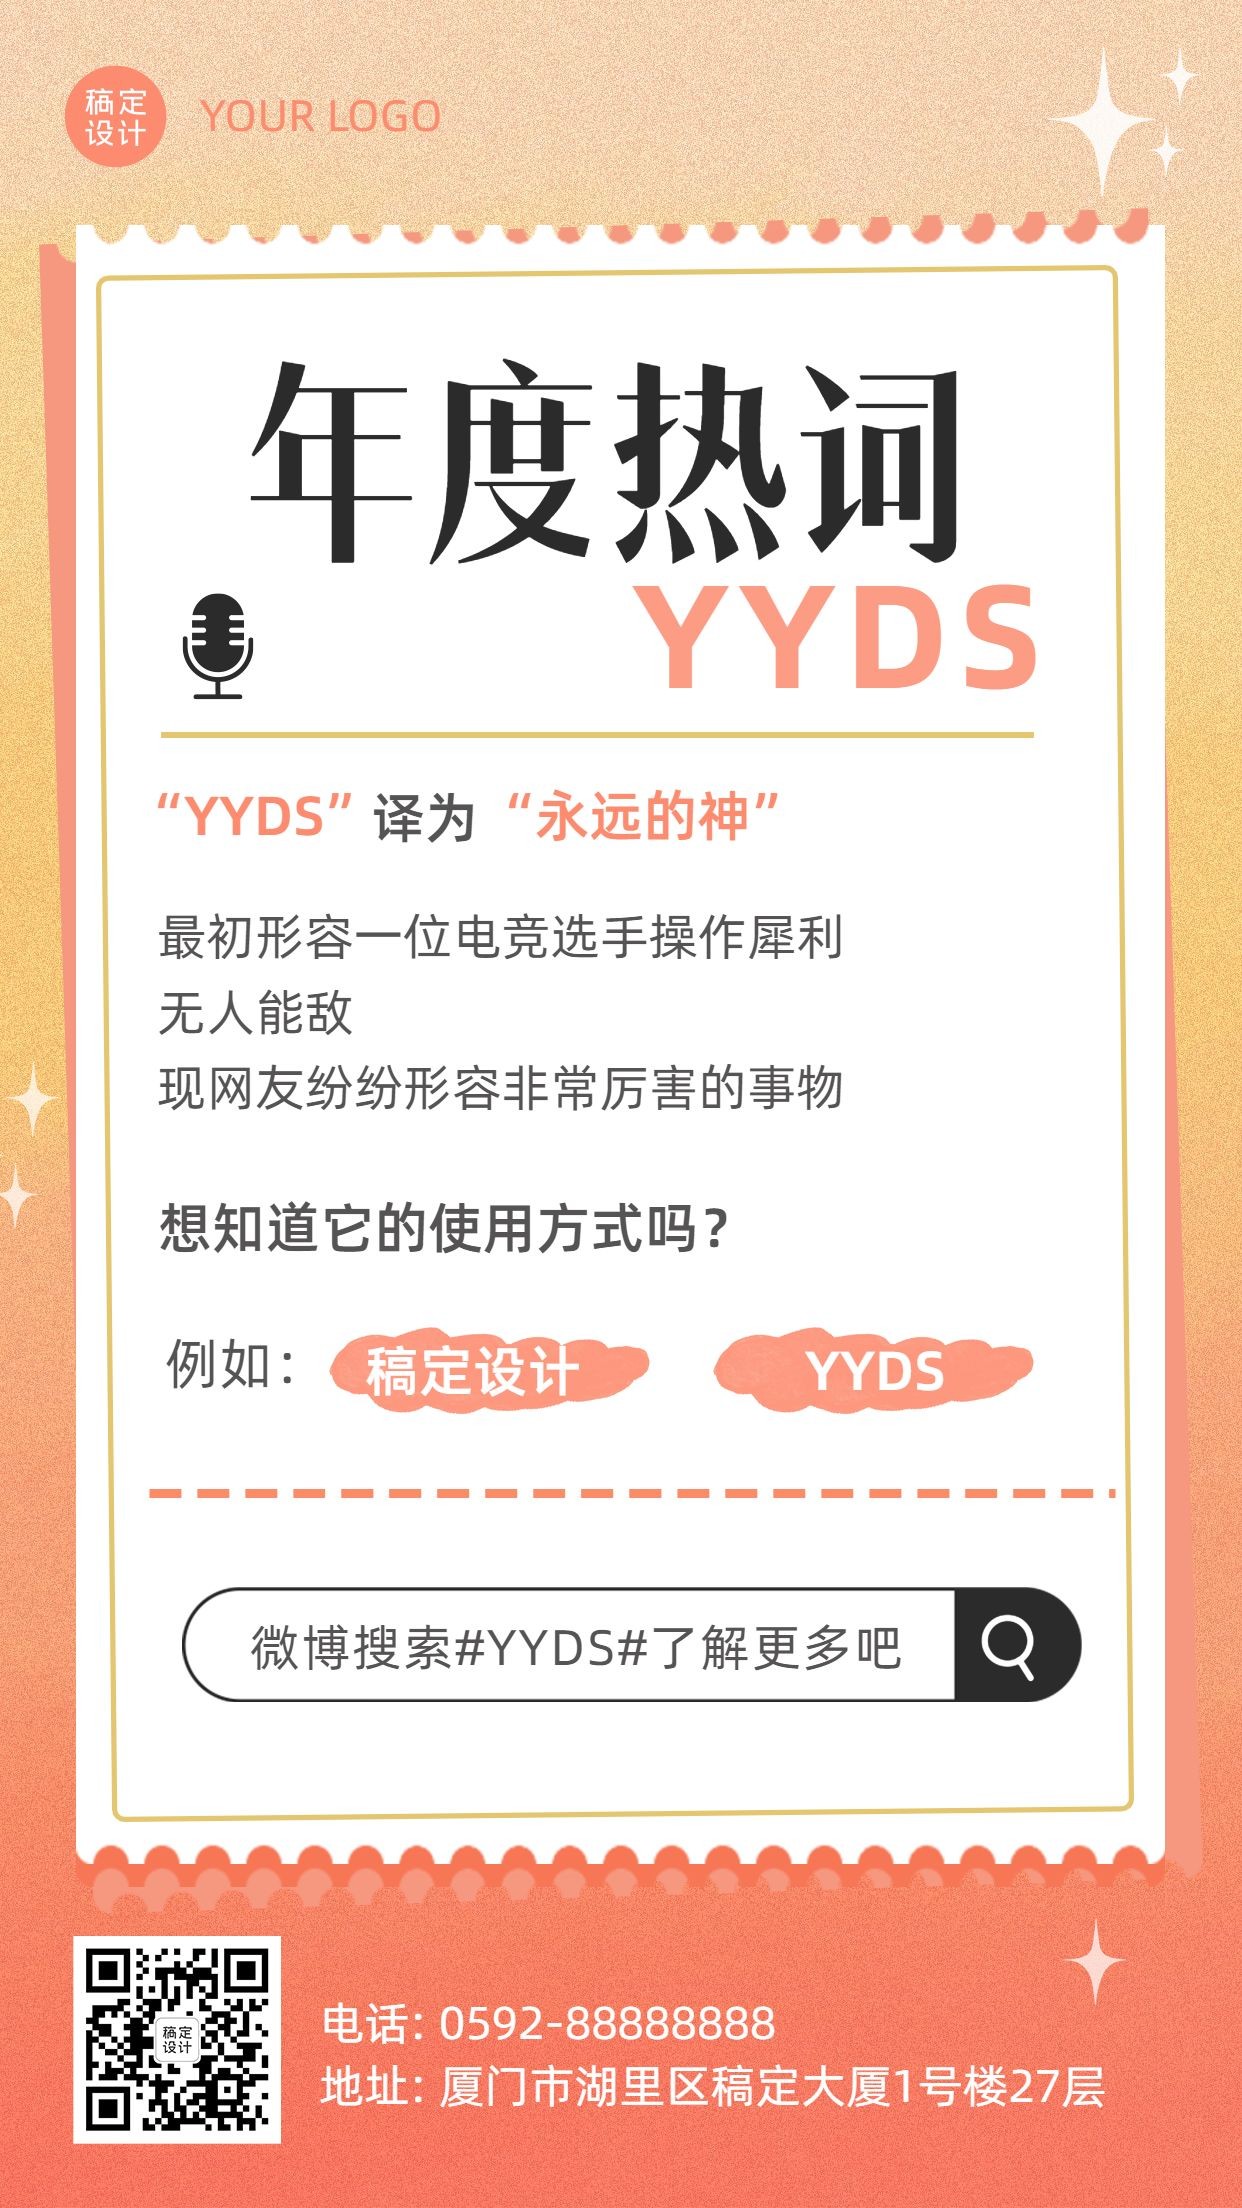 年终总结渐变年度热词YYDS手机海报预览效果